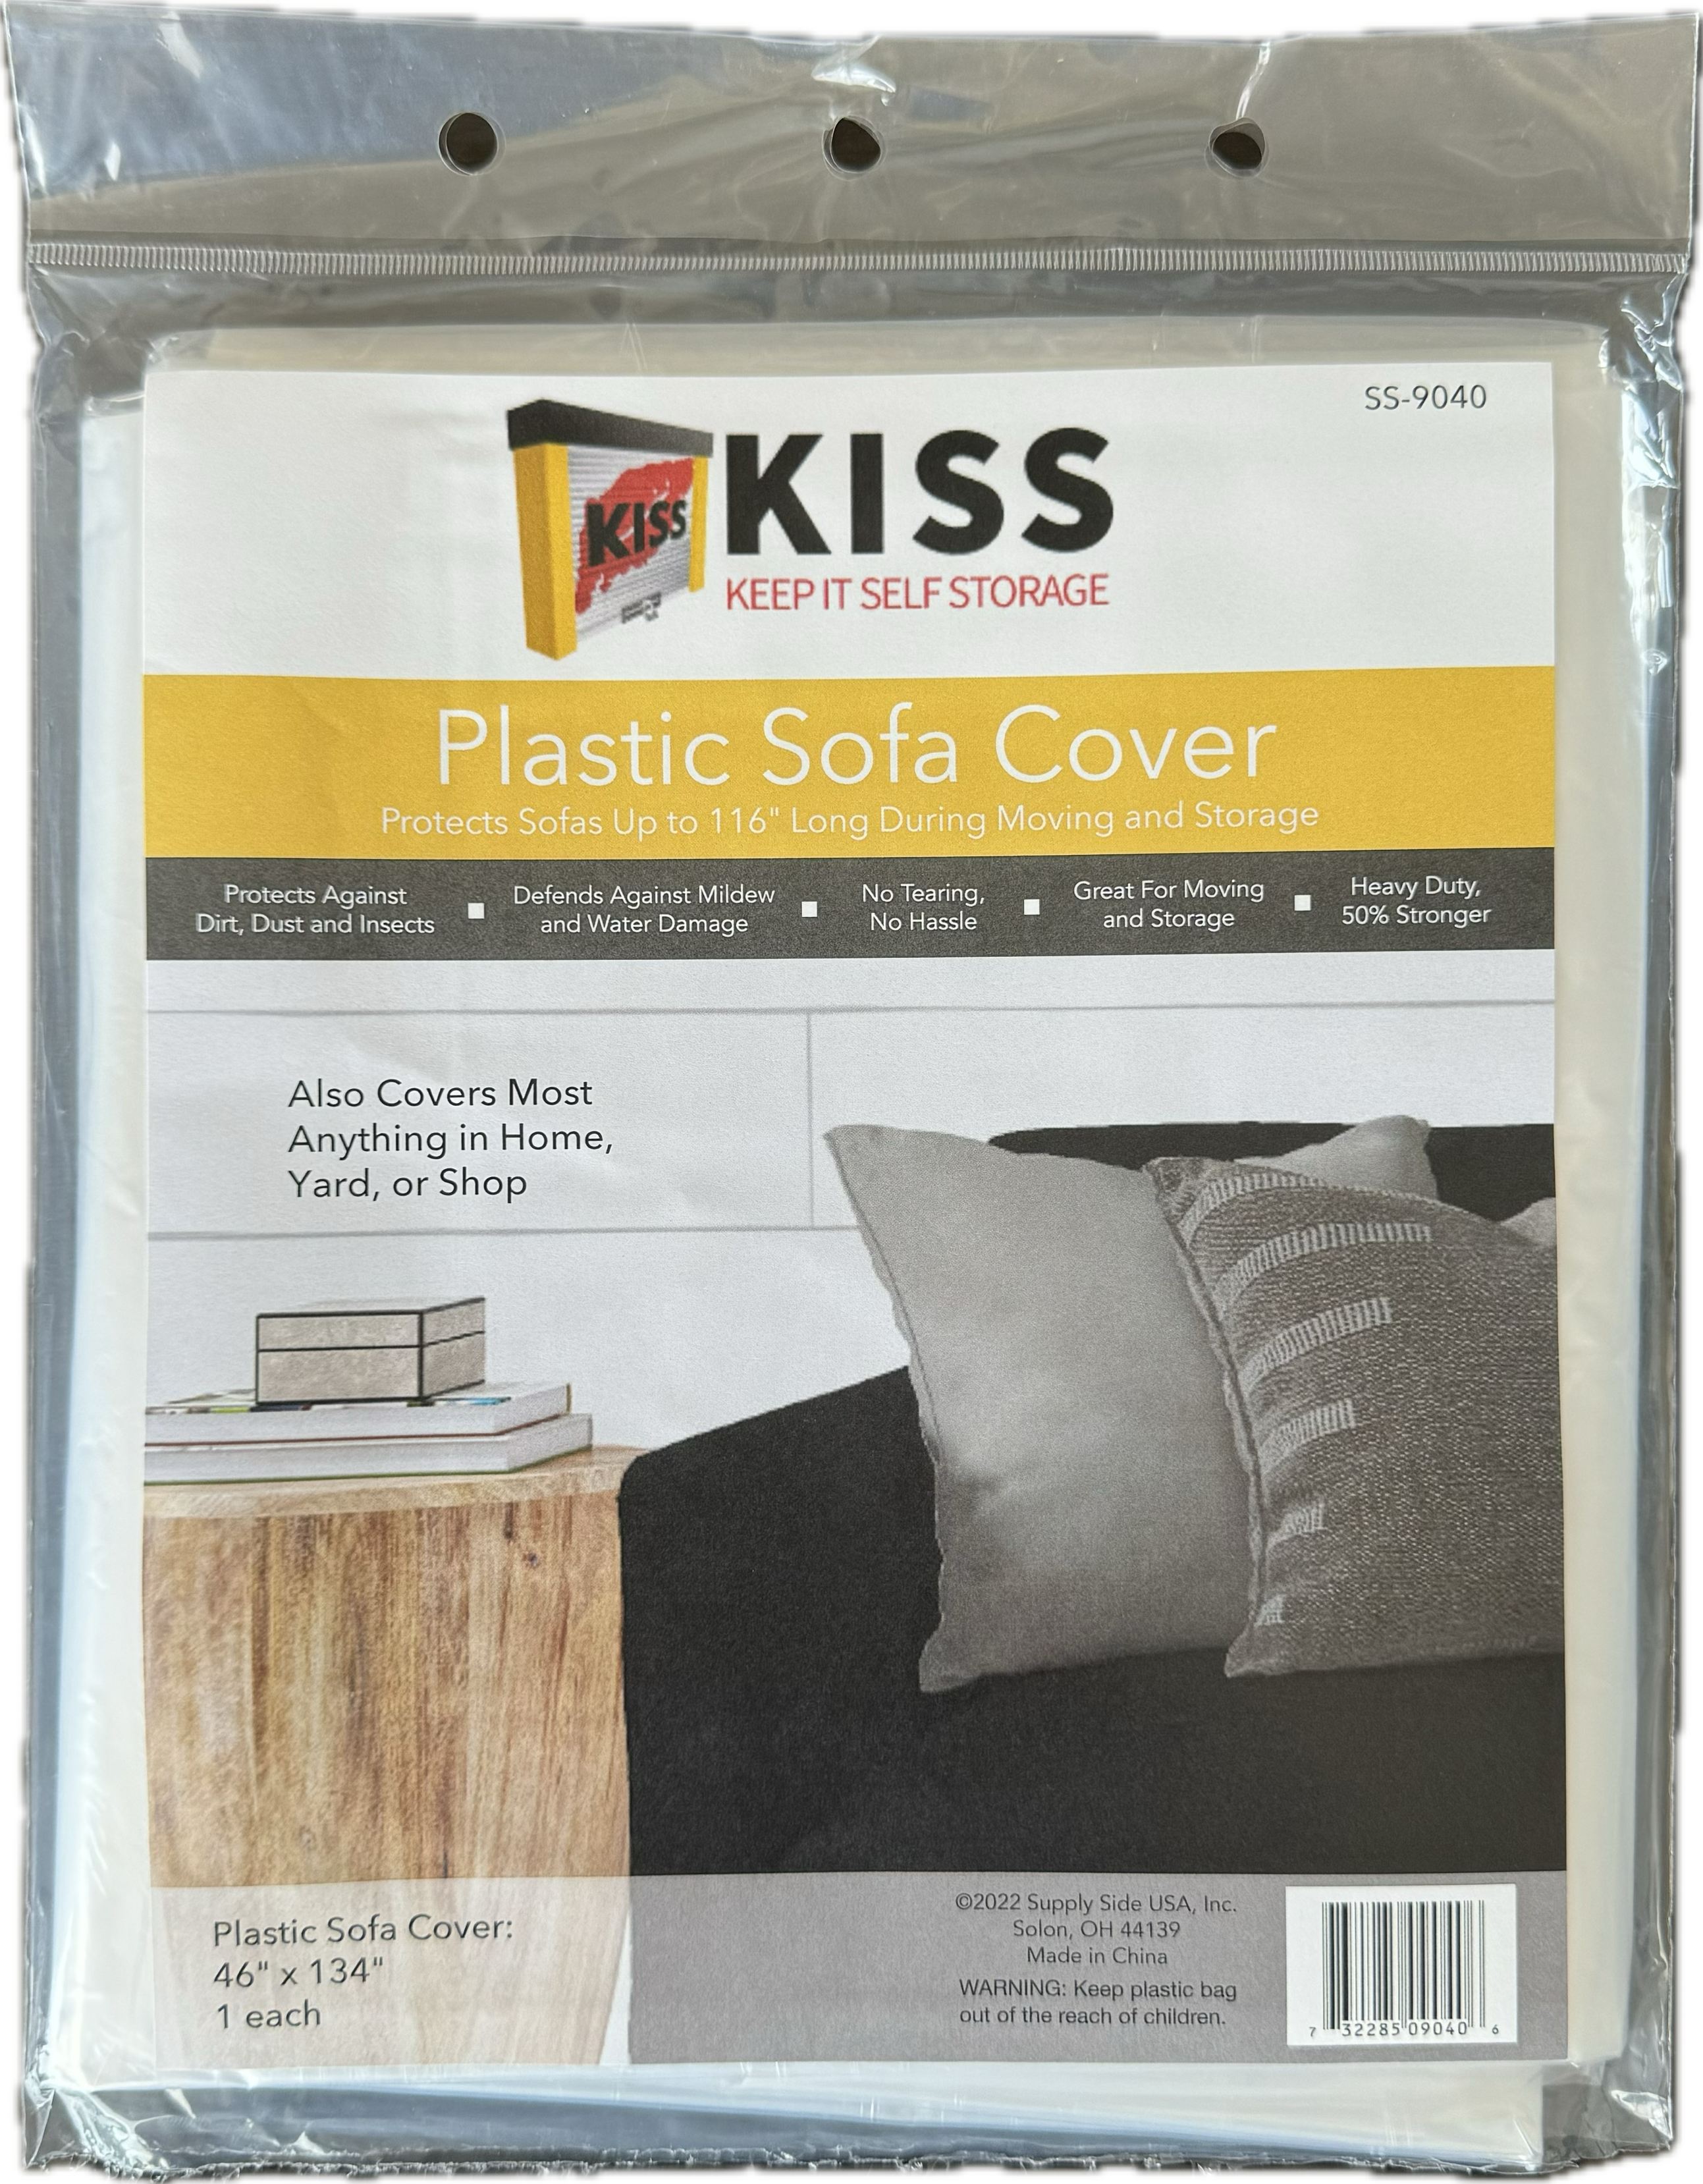 Plastic Sofa Cover